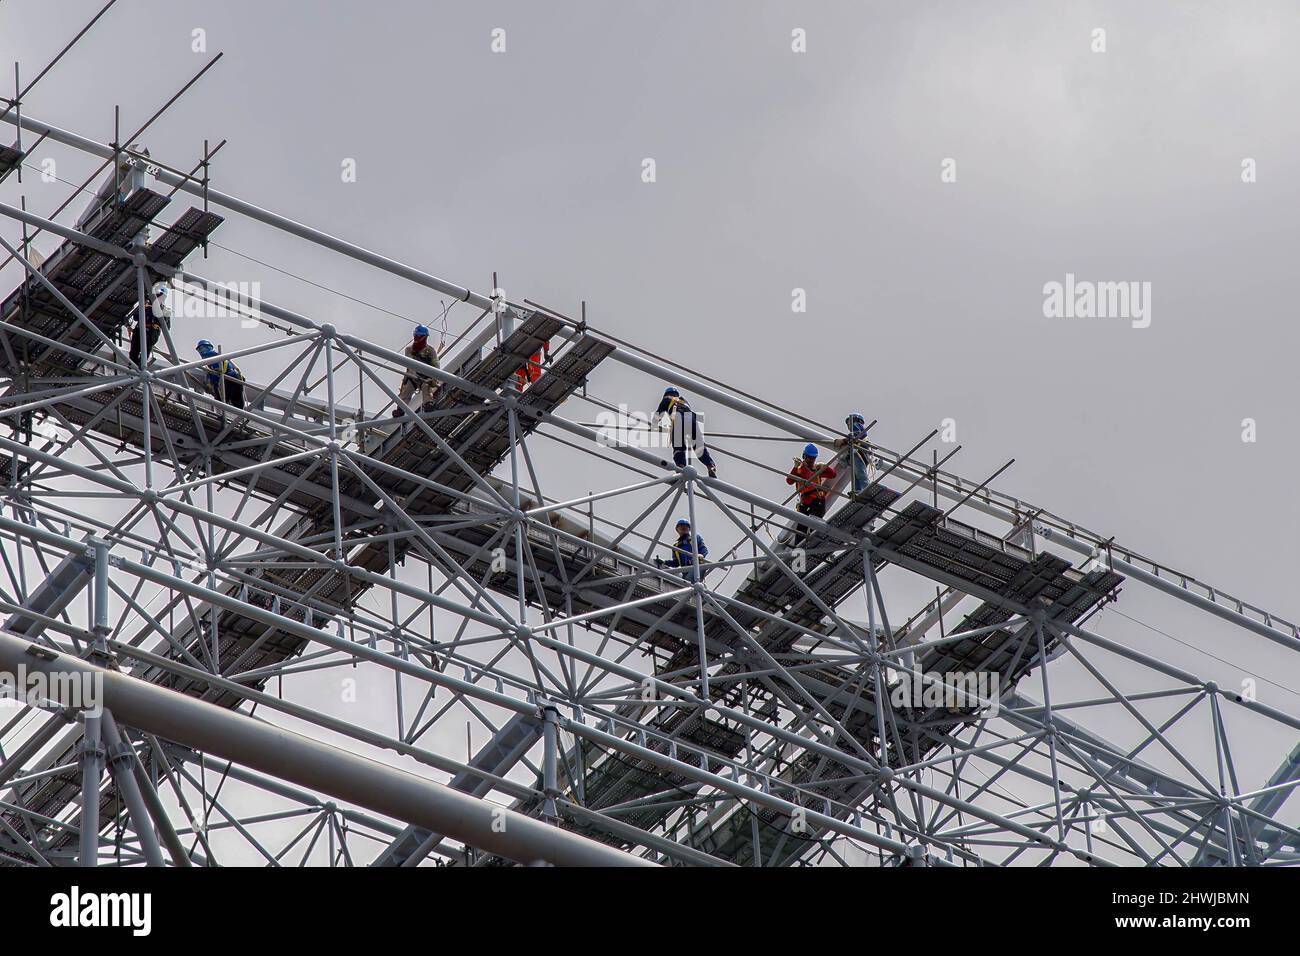 Les travailleurs sont vus en train de vérifier le toit du stade. Les progrès de développement du stade international de Jakarta, la construction a atteint 97 pour cent et son objectif est d'être achevé à la fin du mois de mars. Banque D'Images